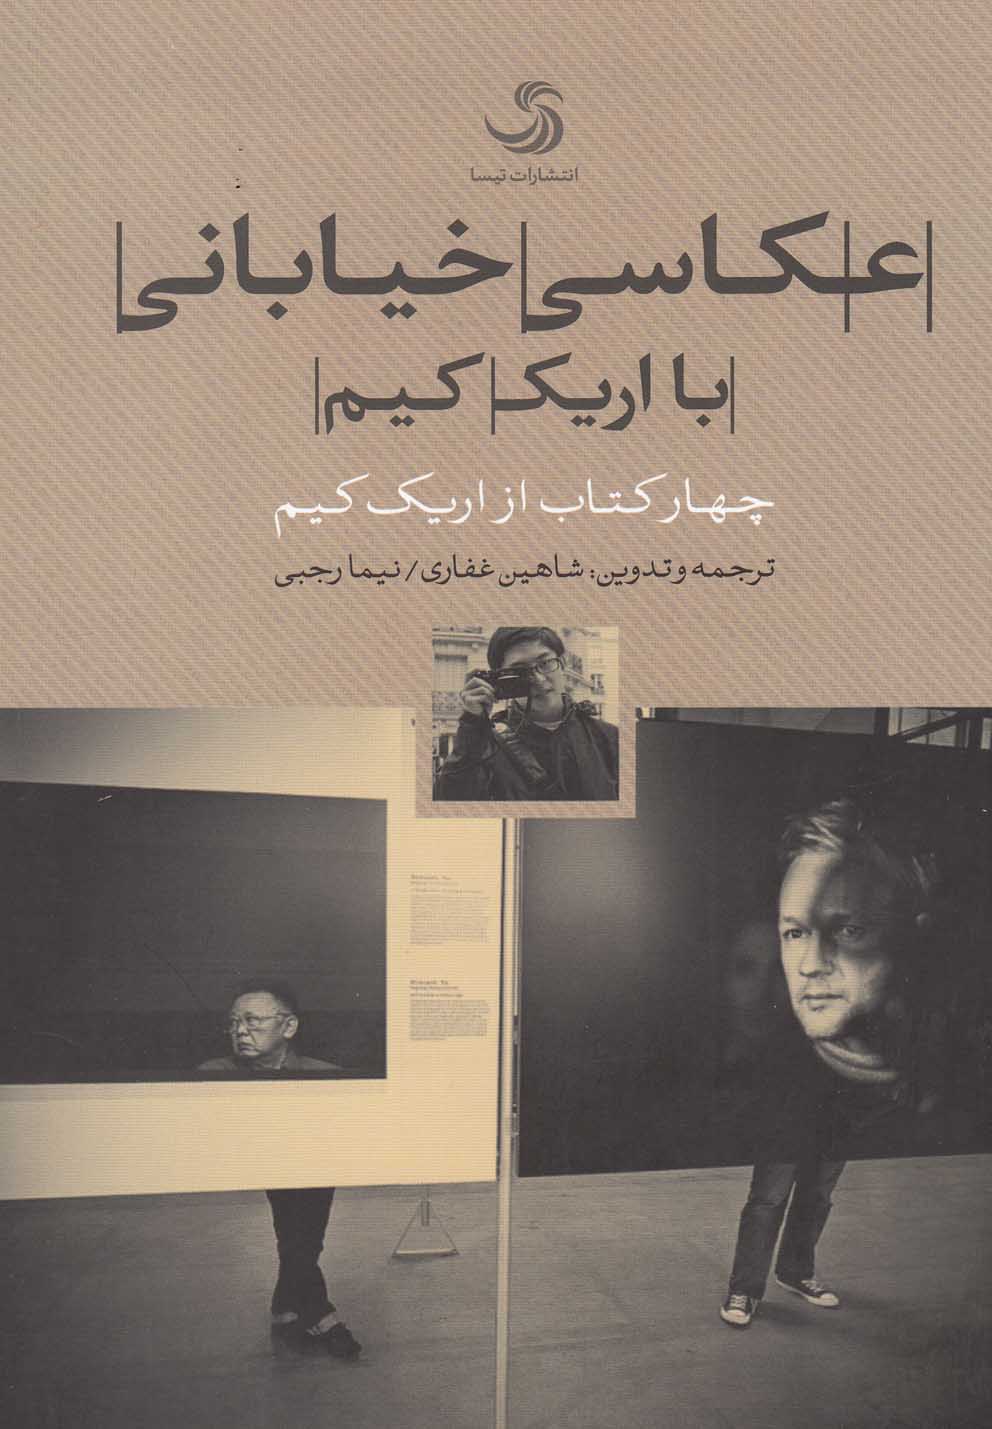 عكاسي خياباني ( چهار كتاب از اريك كيم )